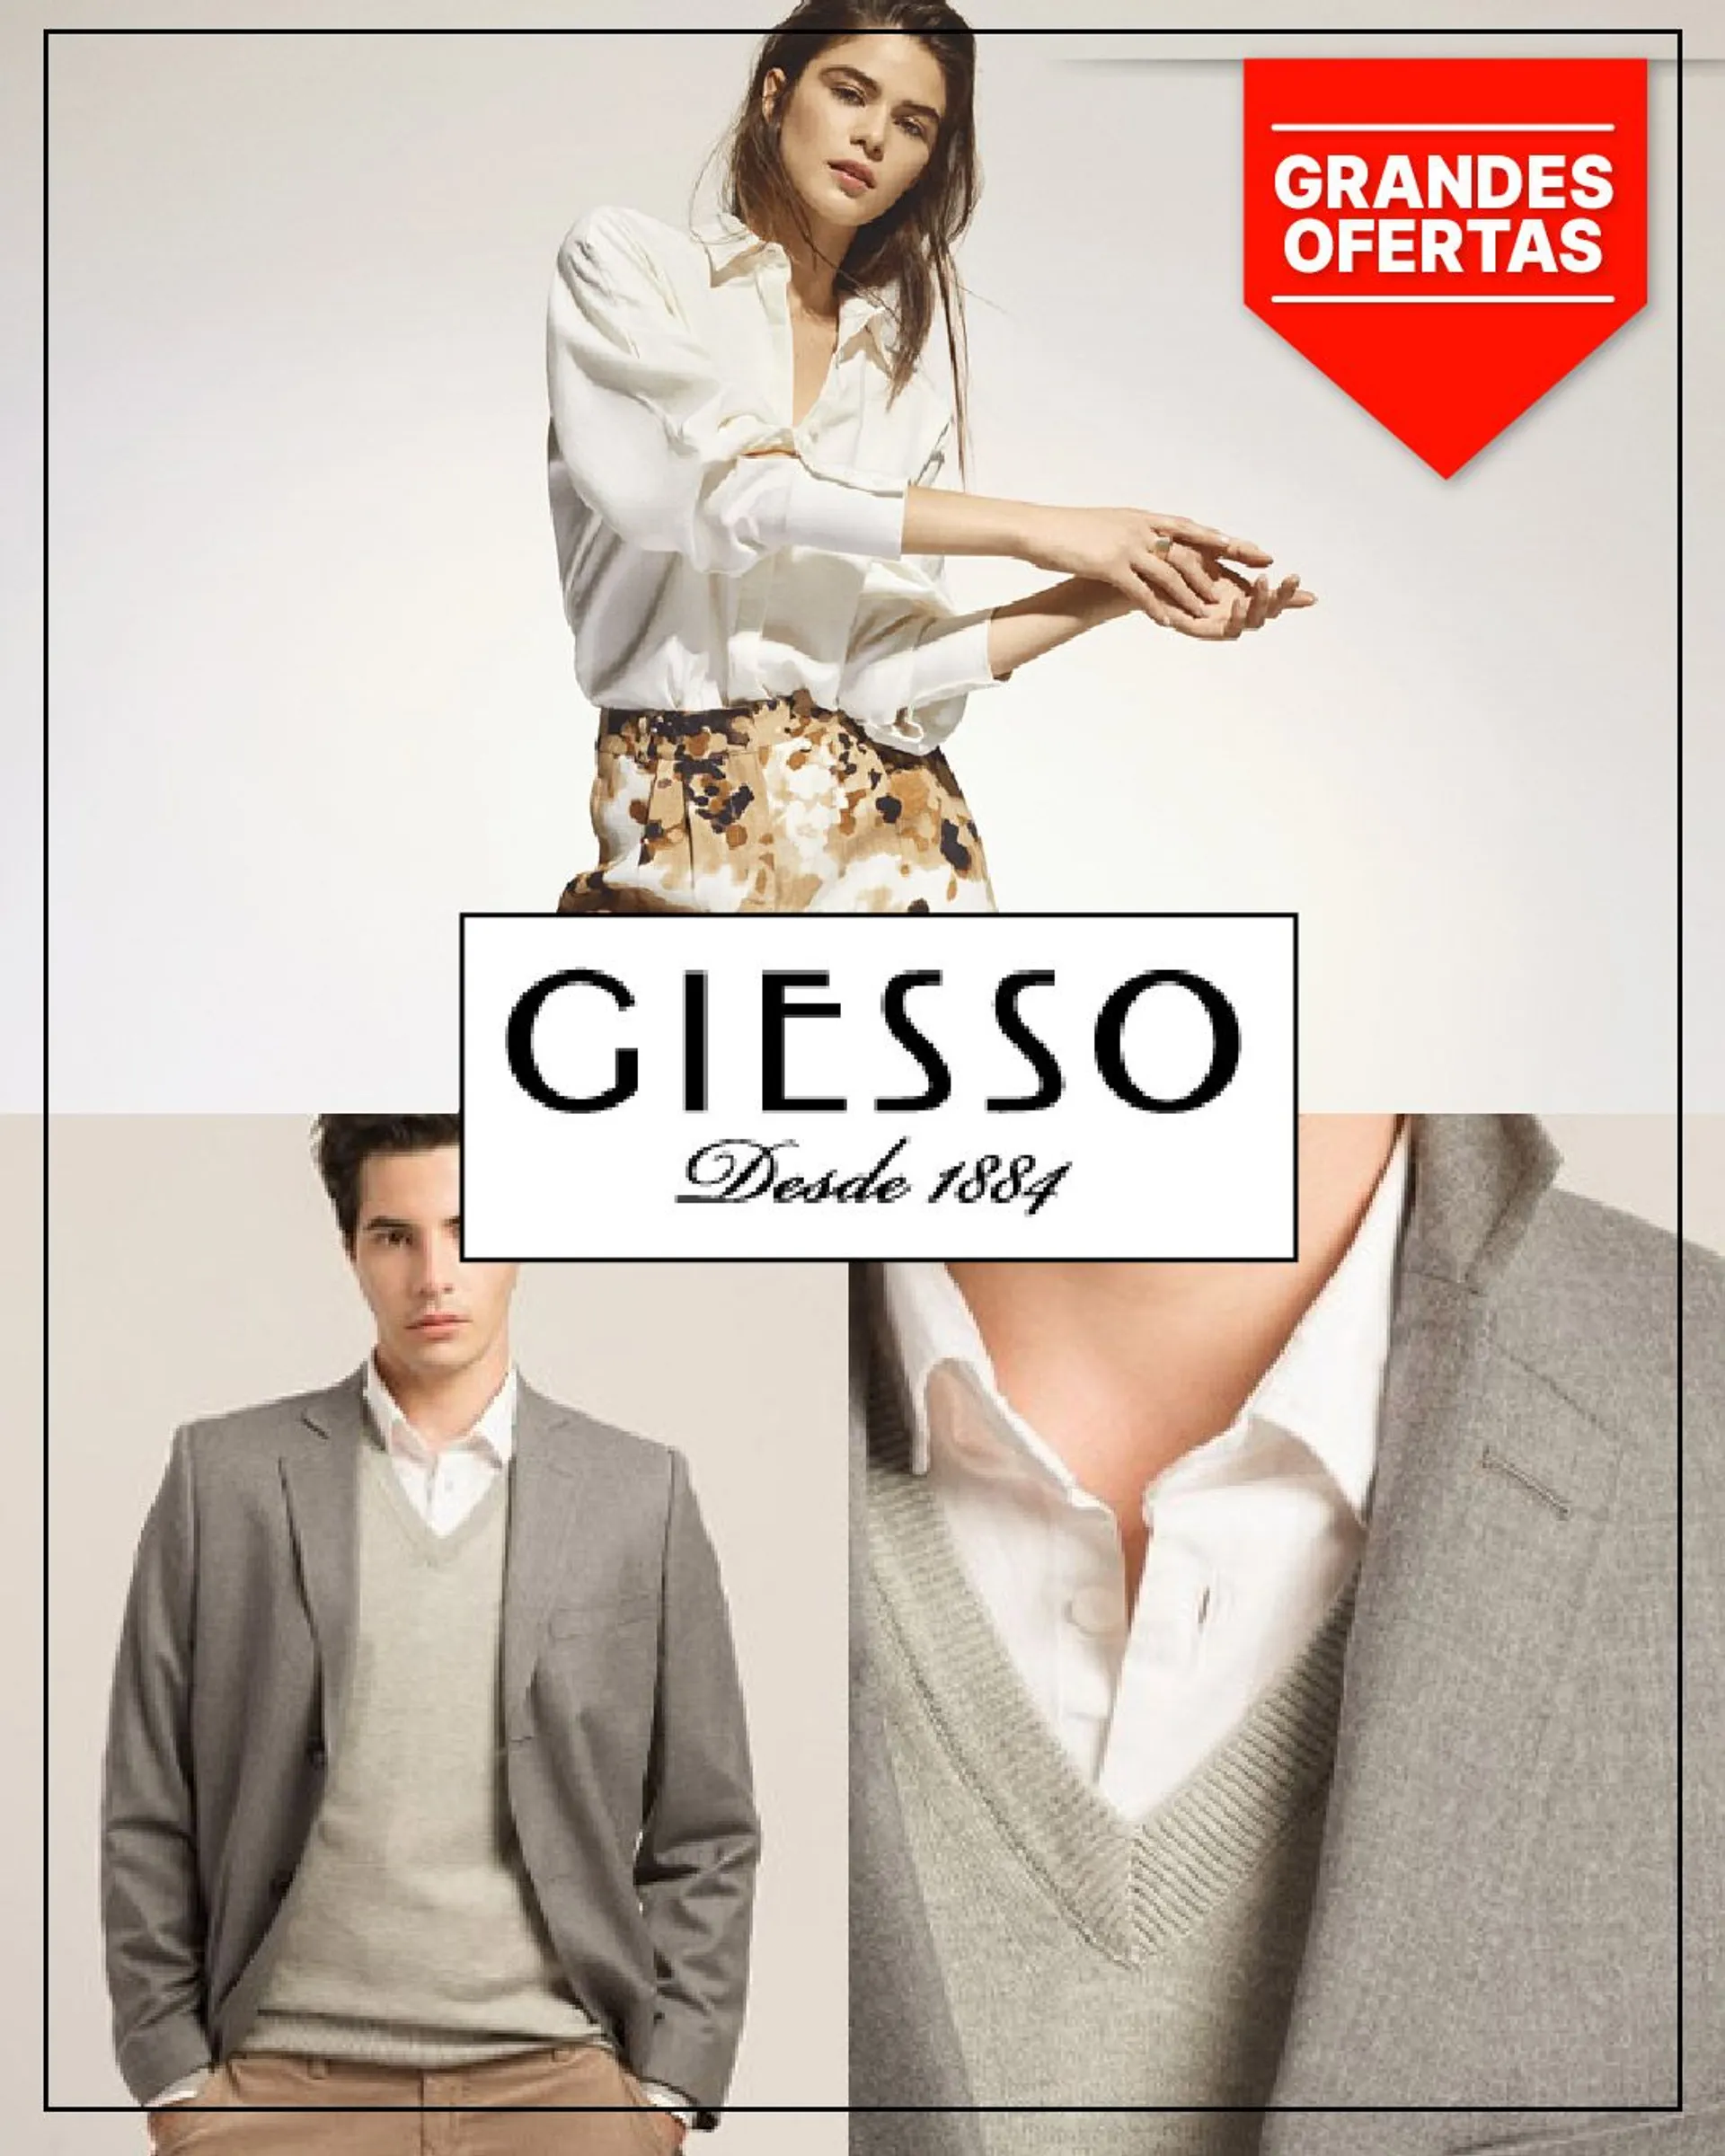 Ofertas de Giesso - Moda 4 de mayo al 9 de mayo 2023 - Página 1 del catálogo